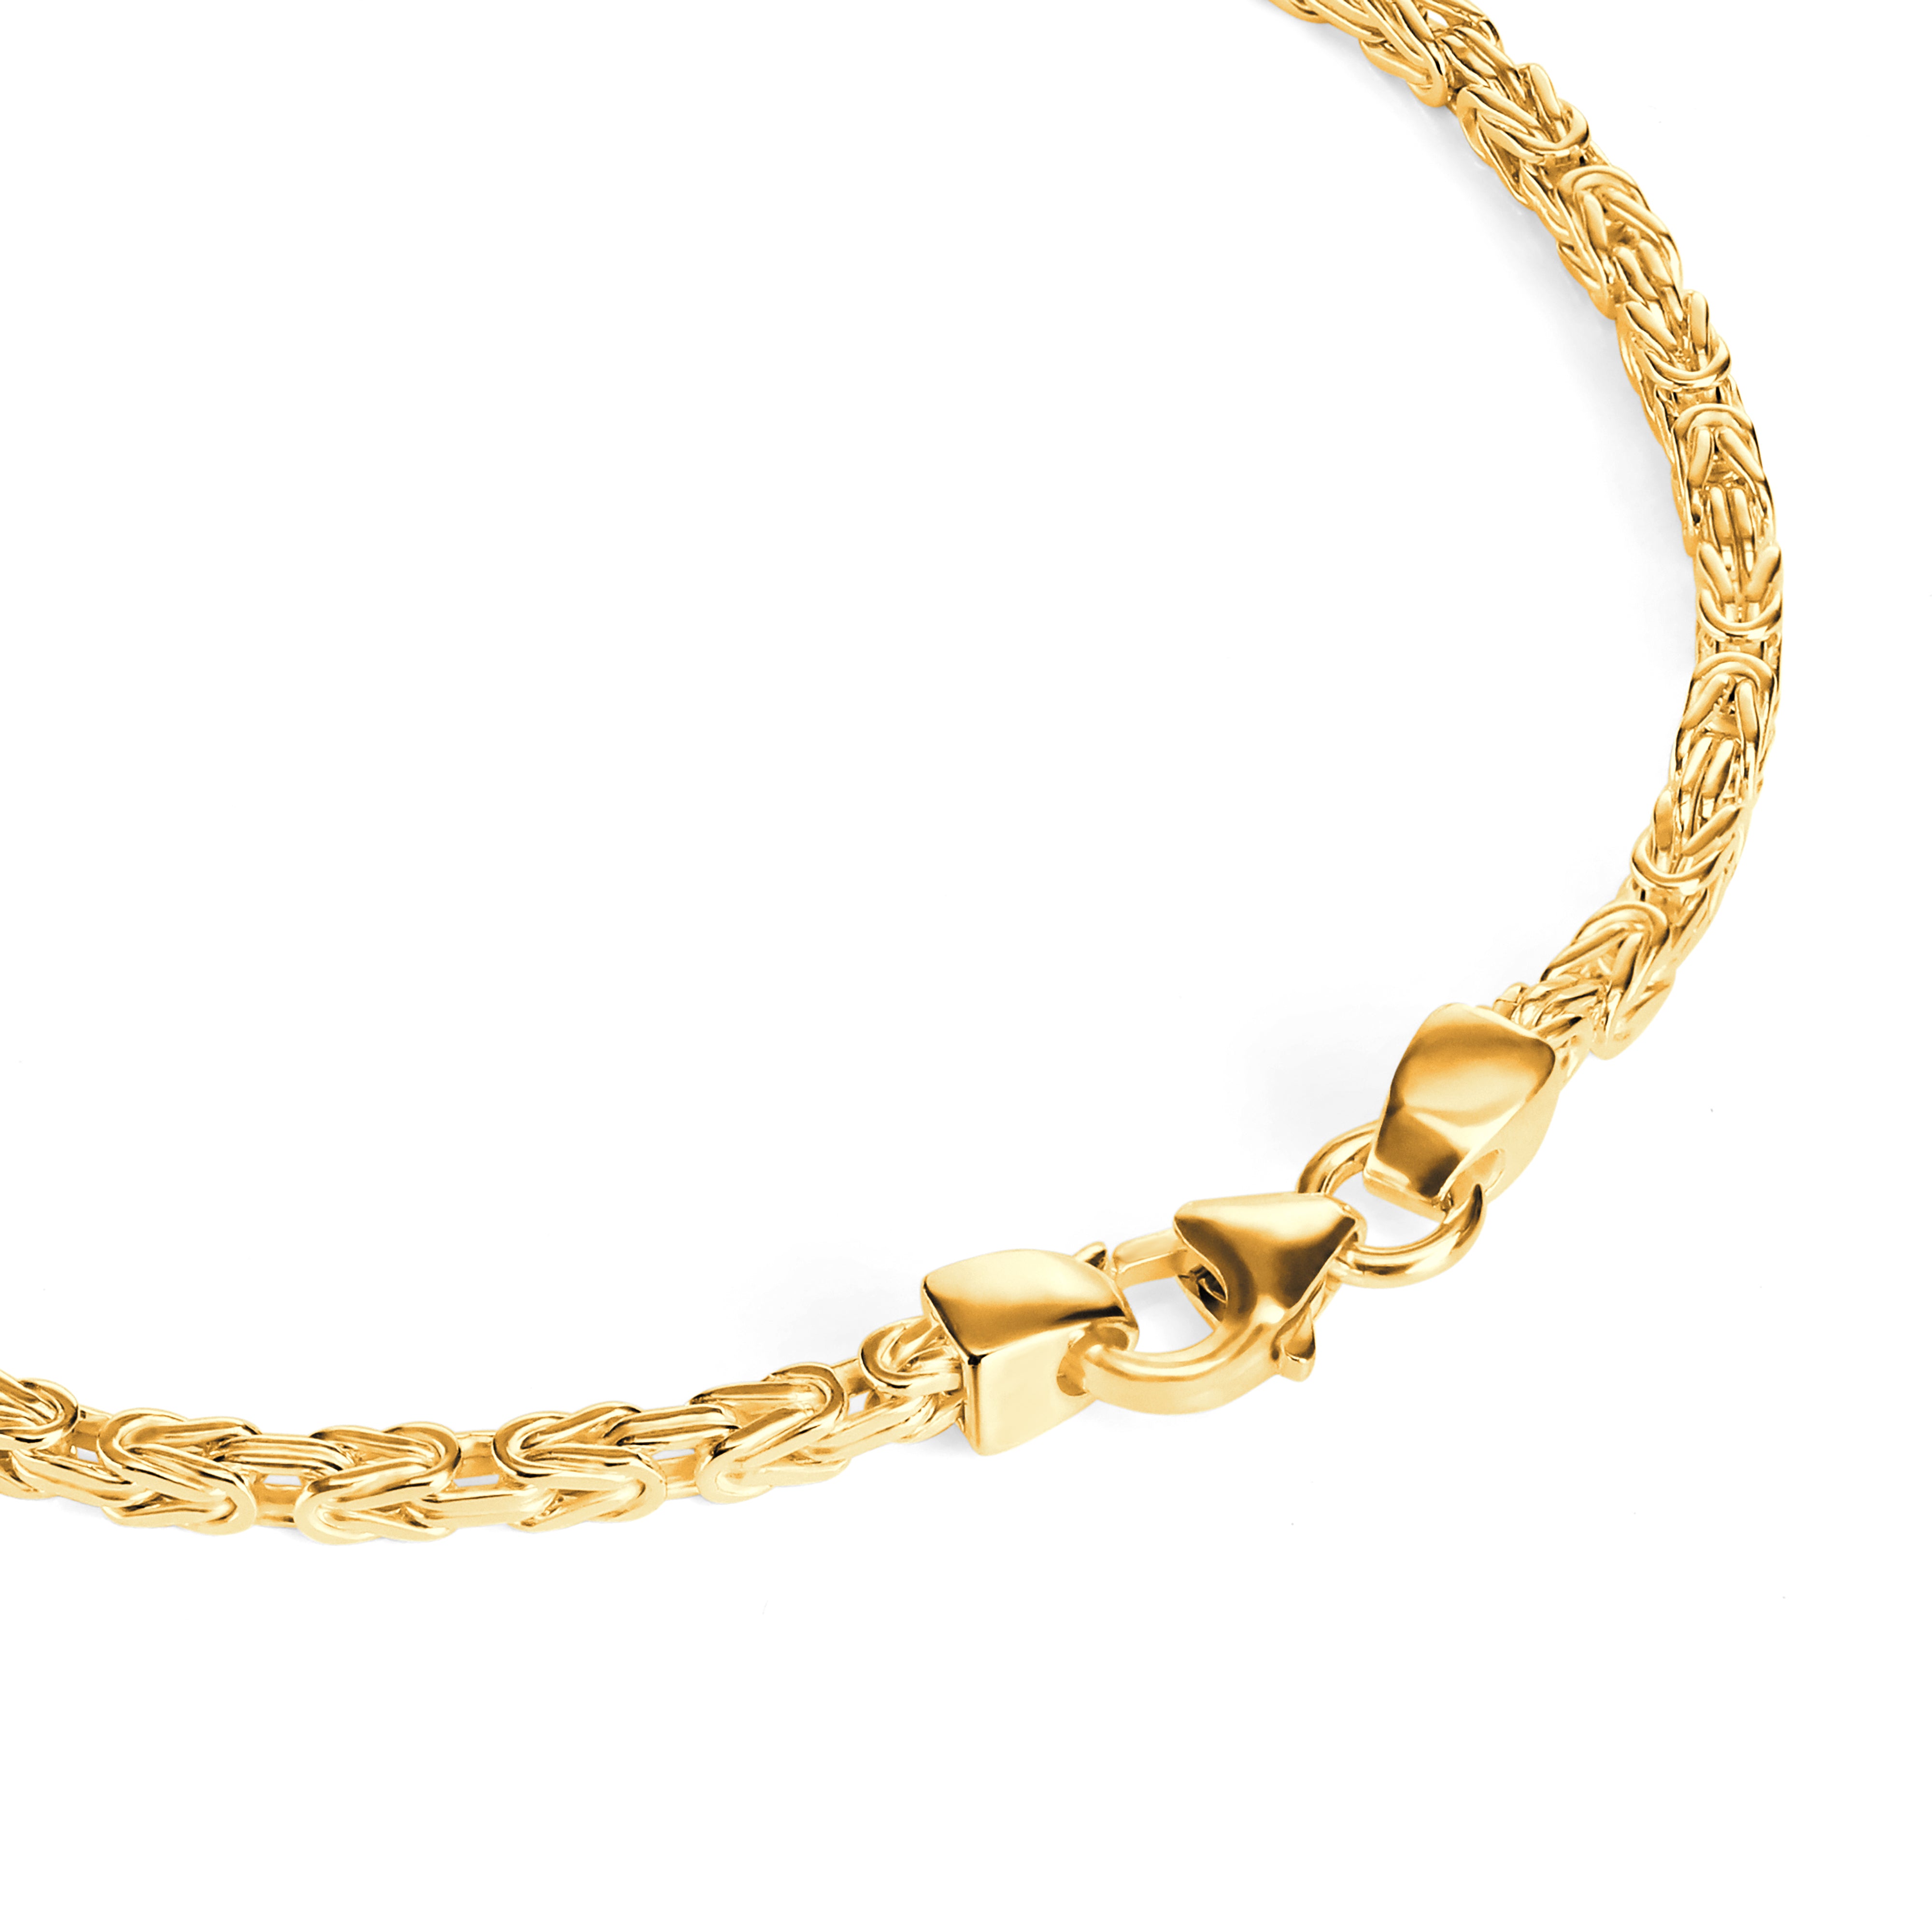 Byzantine bracelet 2mm wide - 585 gold